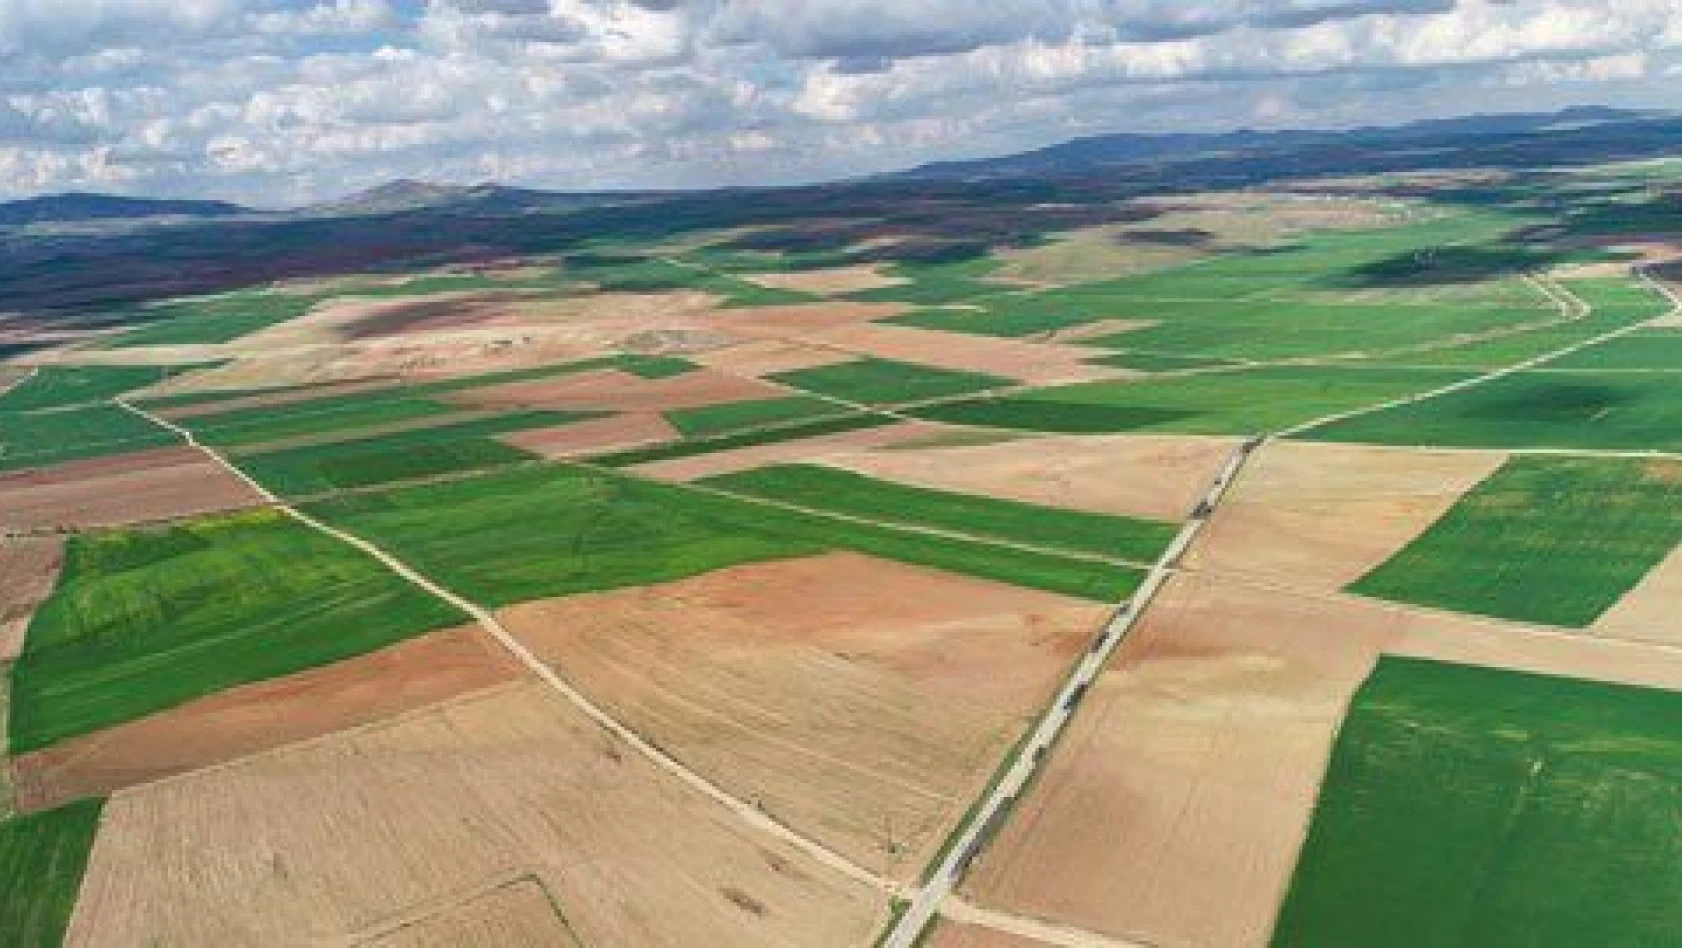 21 bin hektar arazi toplulaştırıldı